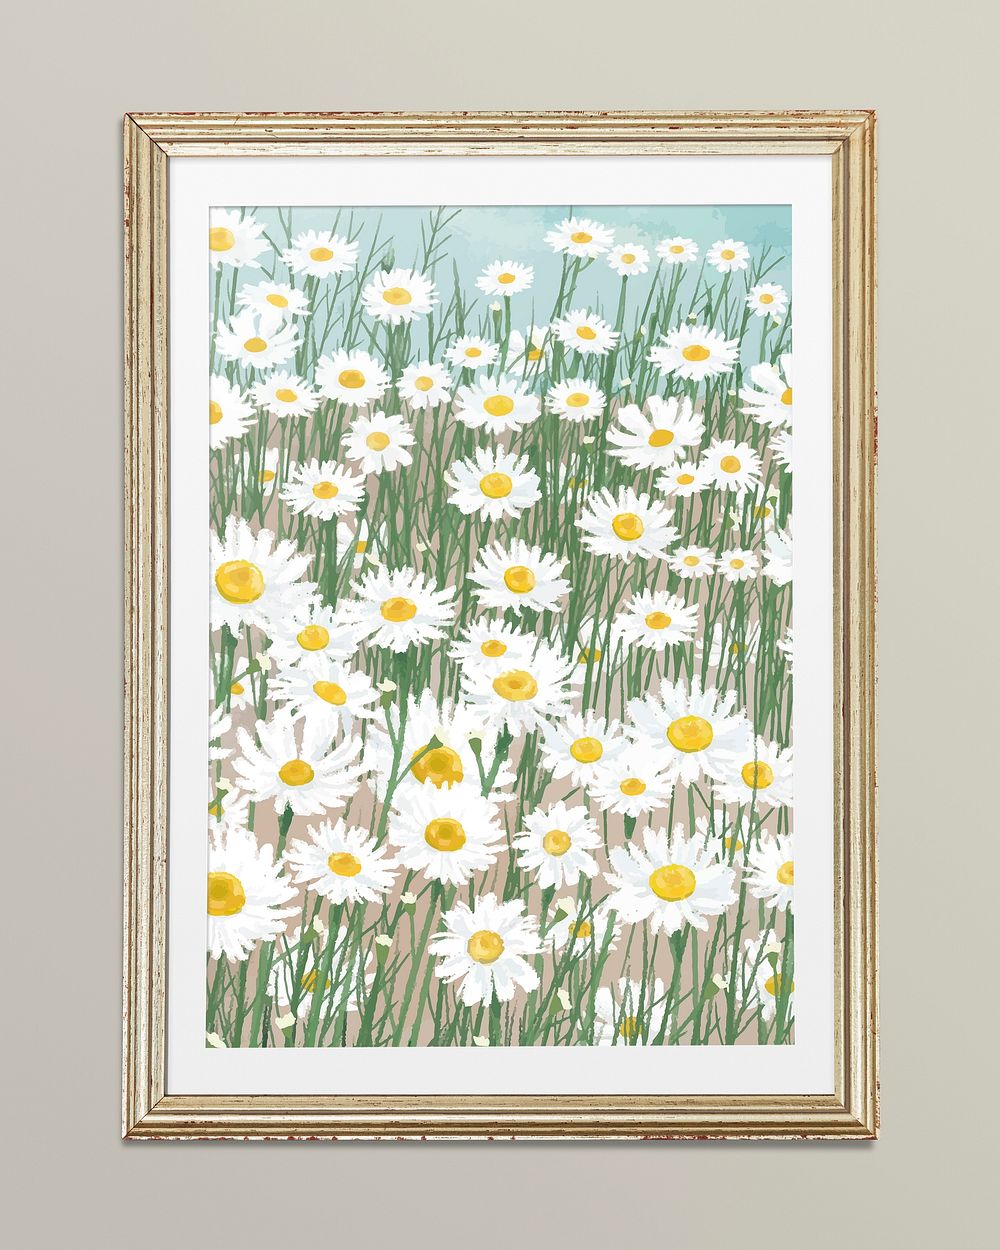 Daisy flower illustration, gold frame